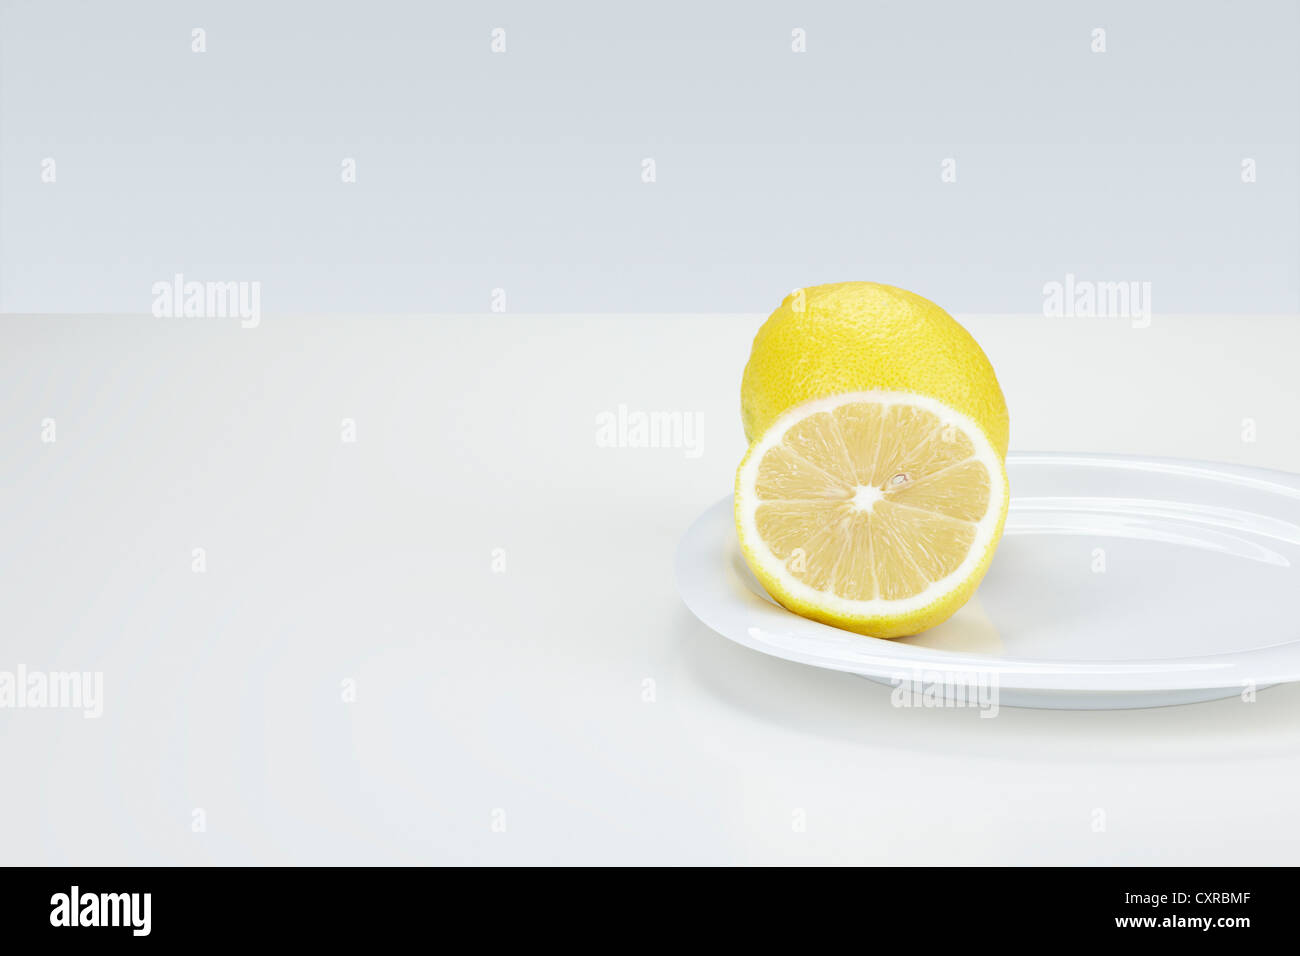 Zitrone (Citrus Limon), ganze und halbierte, auf einem weißen Teller Stockfoto